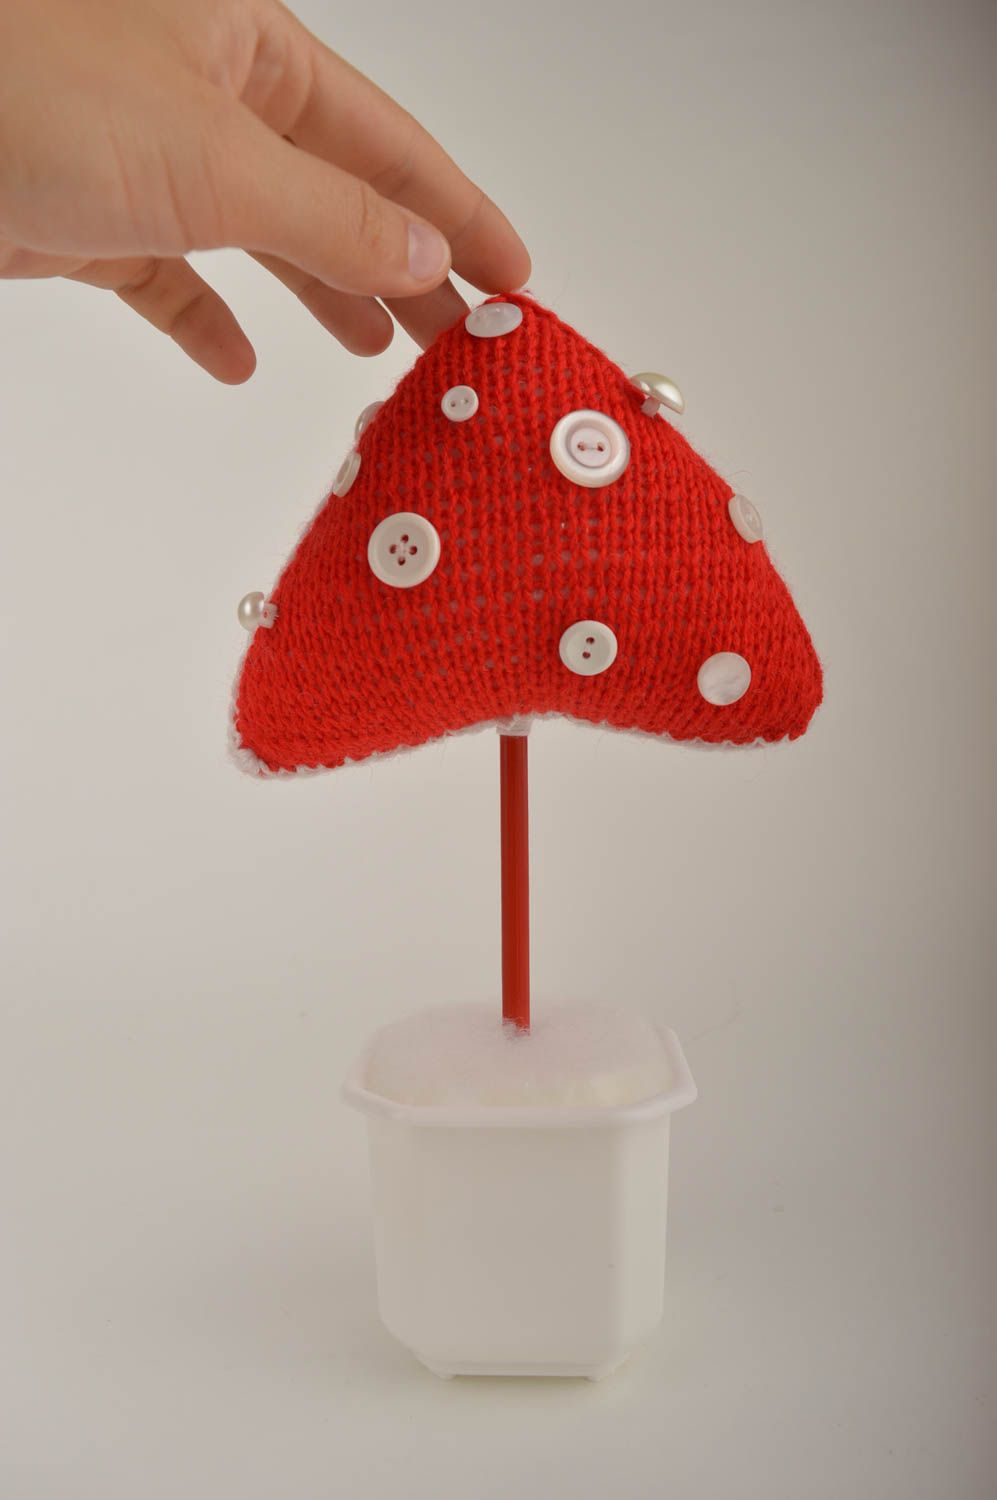 Handmade ungewöhnliches Spielzeug tolle Deko für Weihnachten Geschenk Idee foto 2